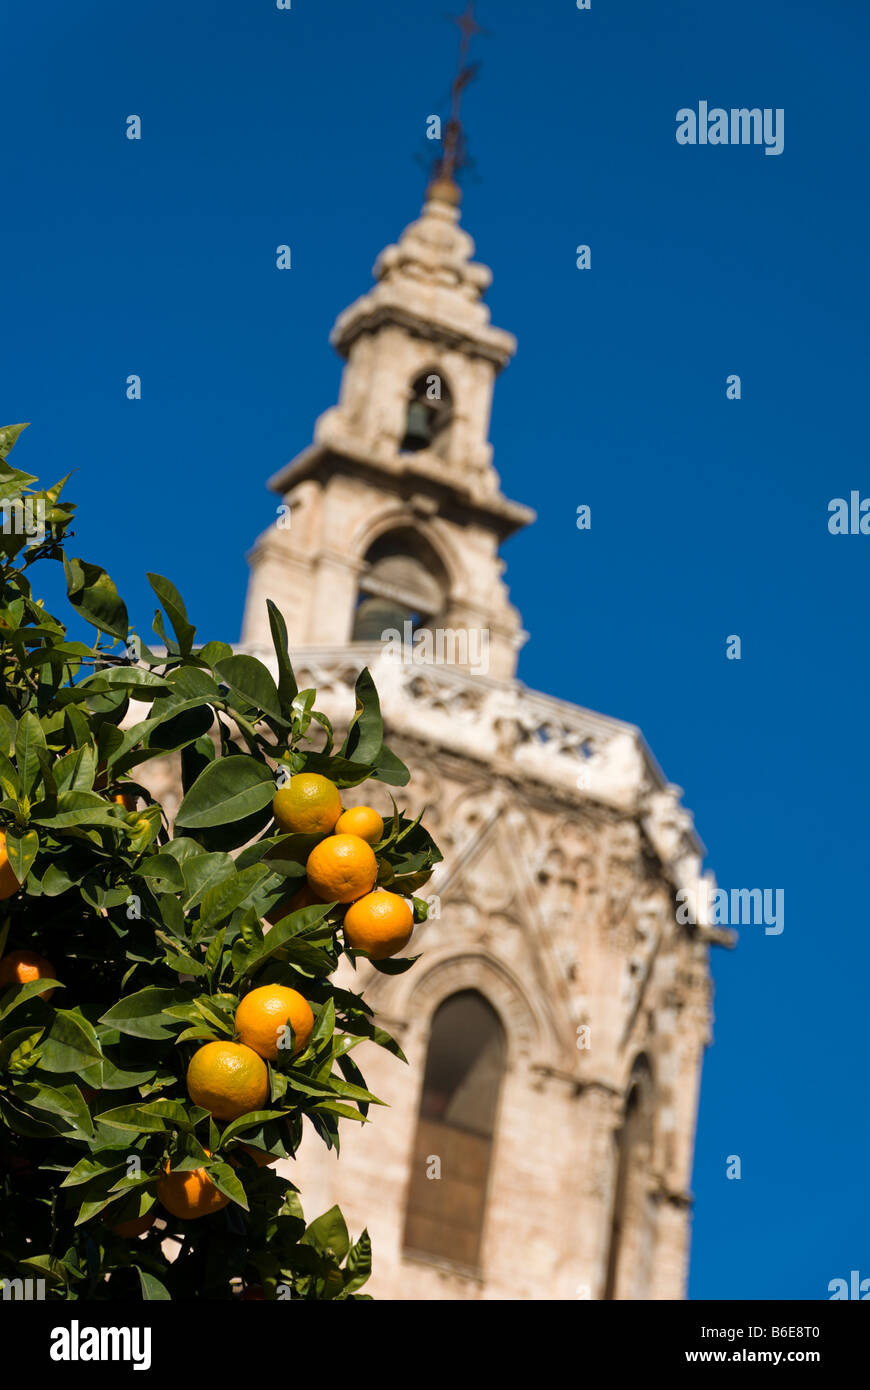 Les oranges en face de la cathédrale Miguelete Bell Tower sur la place de la Reine dans le centre-ville historique de Valence Espagne Banque D'Images